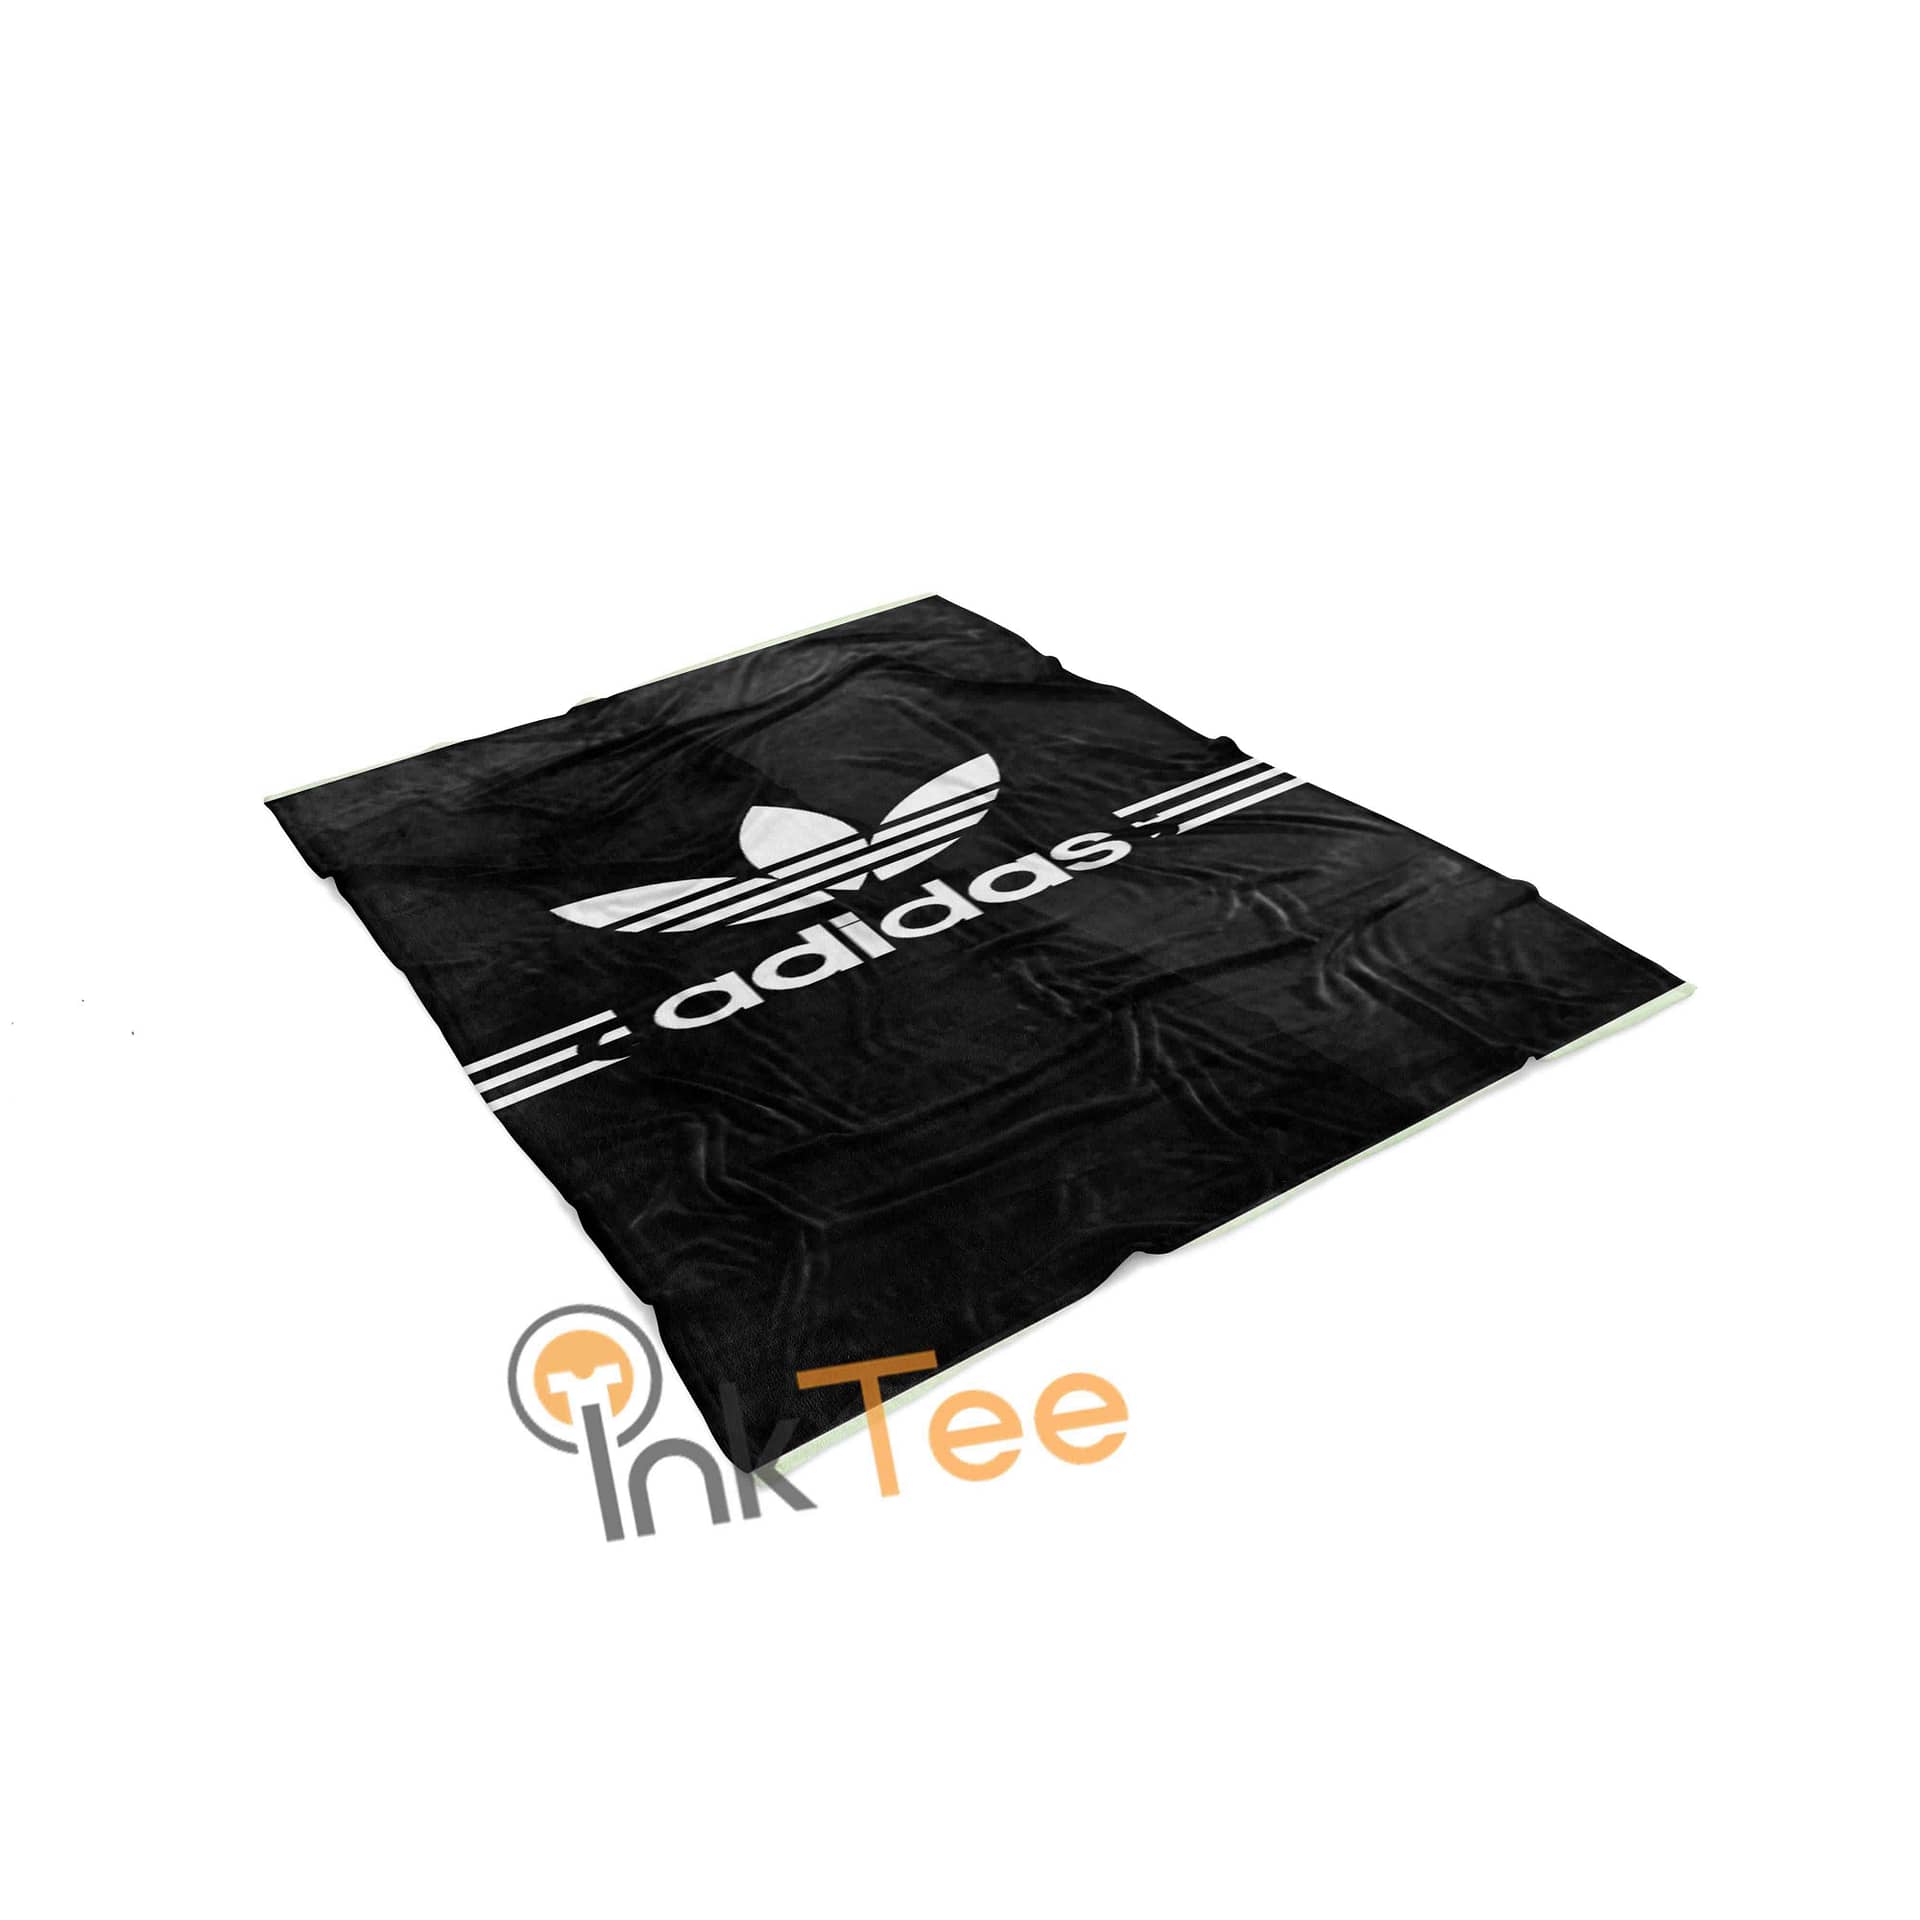 Inktee Store - Adidas Area Amazon Best Seller Sku 4031 Fleece Blanket Image